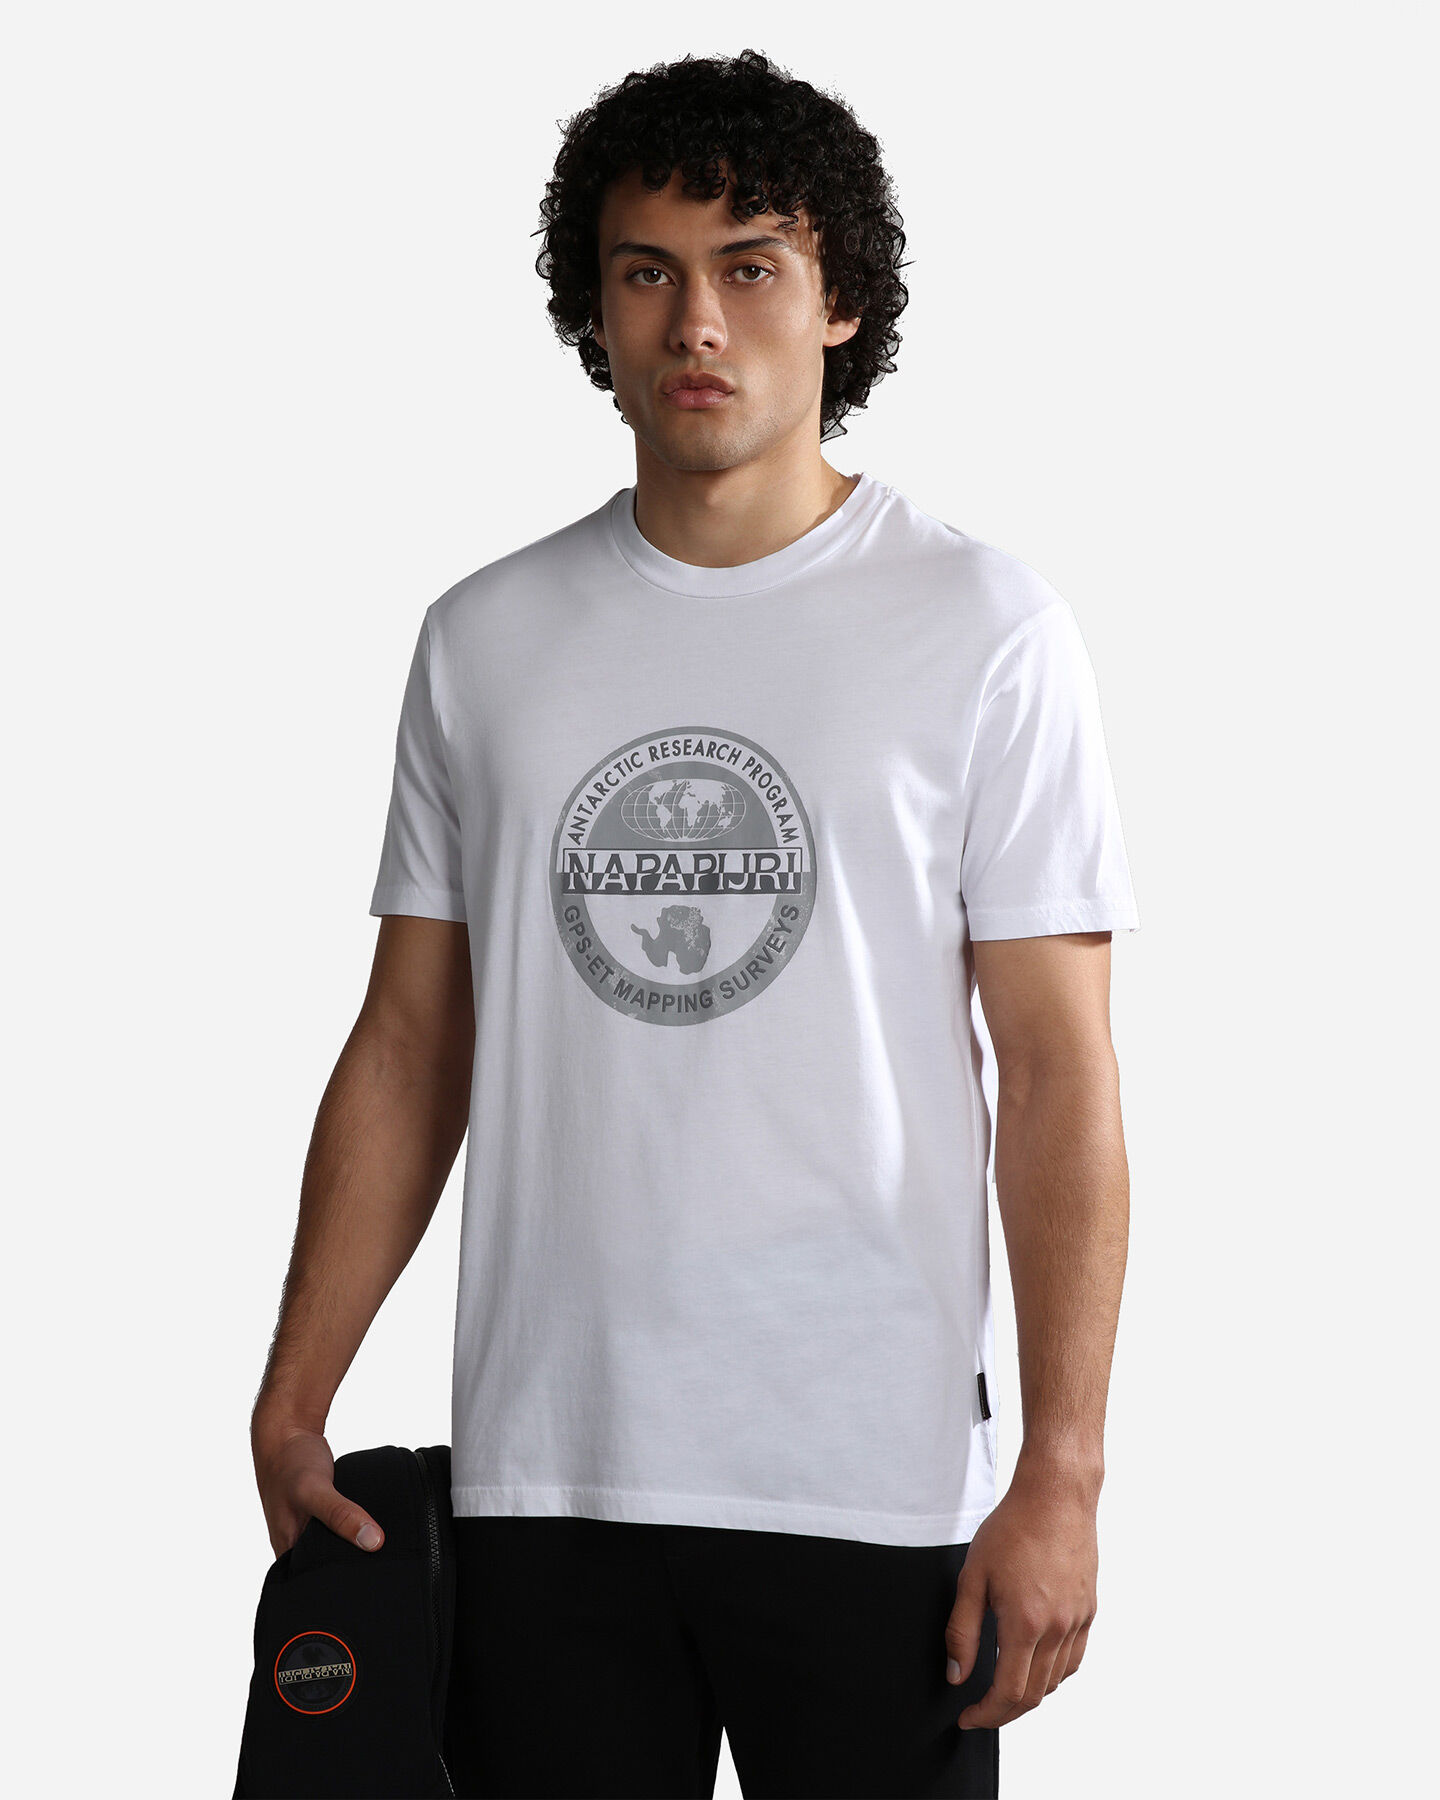  T-Shirt NAPAPIJRI BOLLO M S4122495|002|S scatto 0